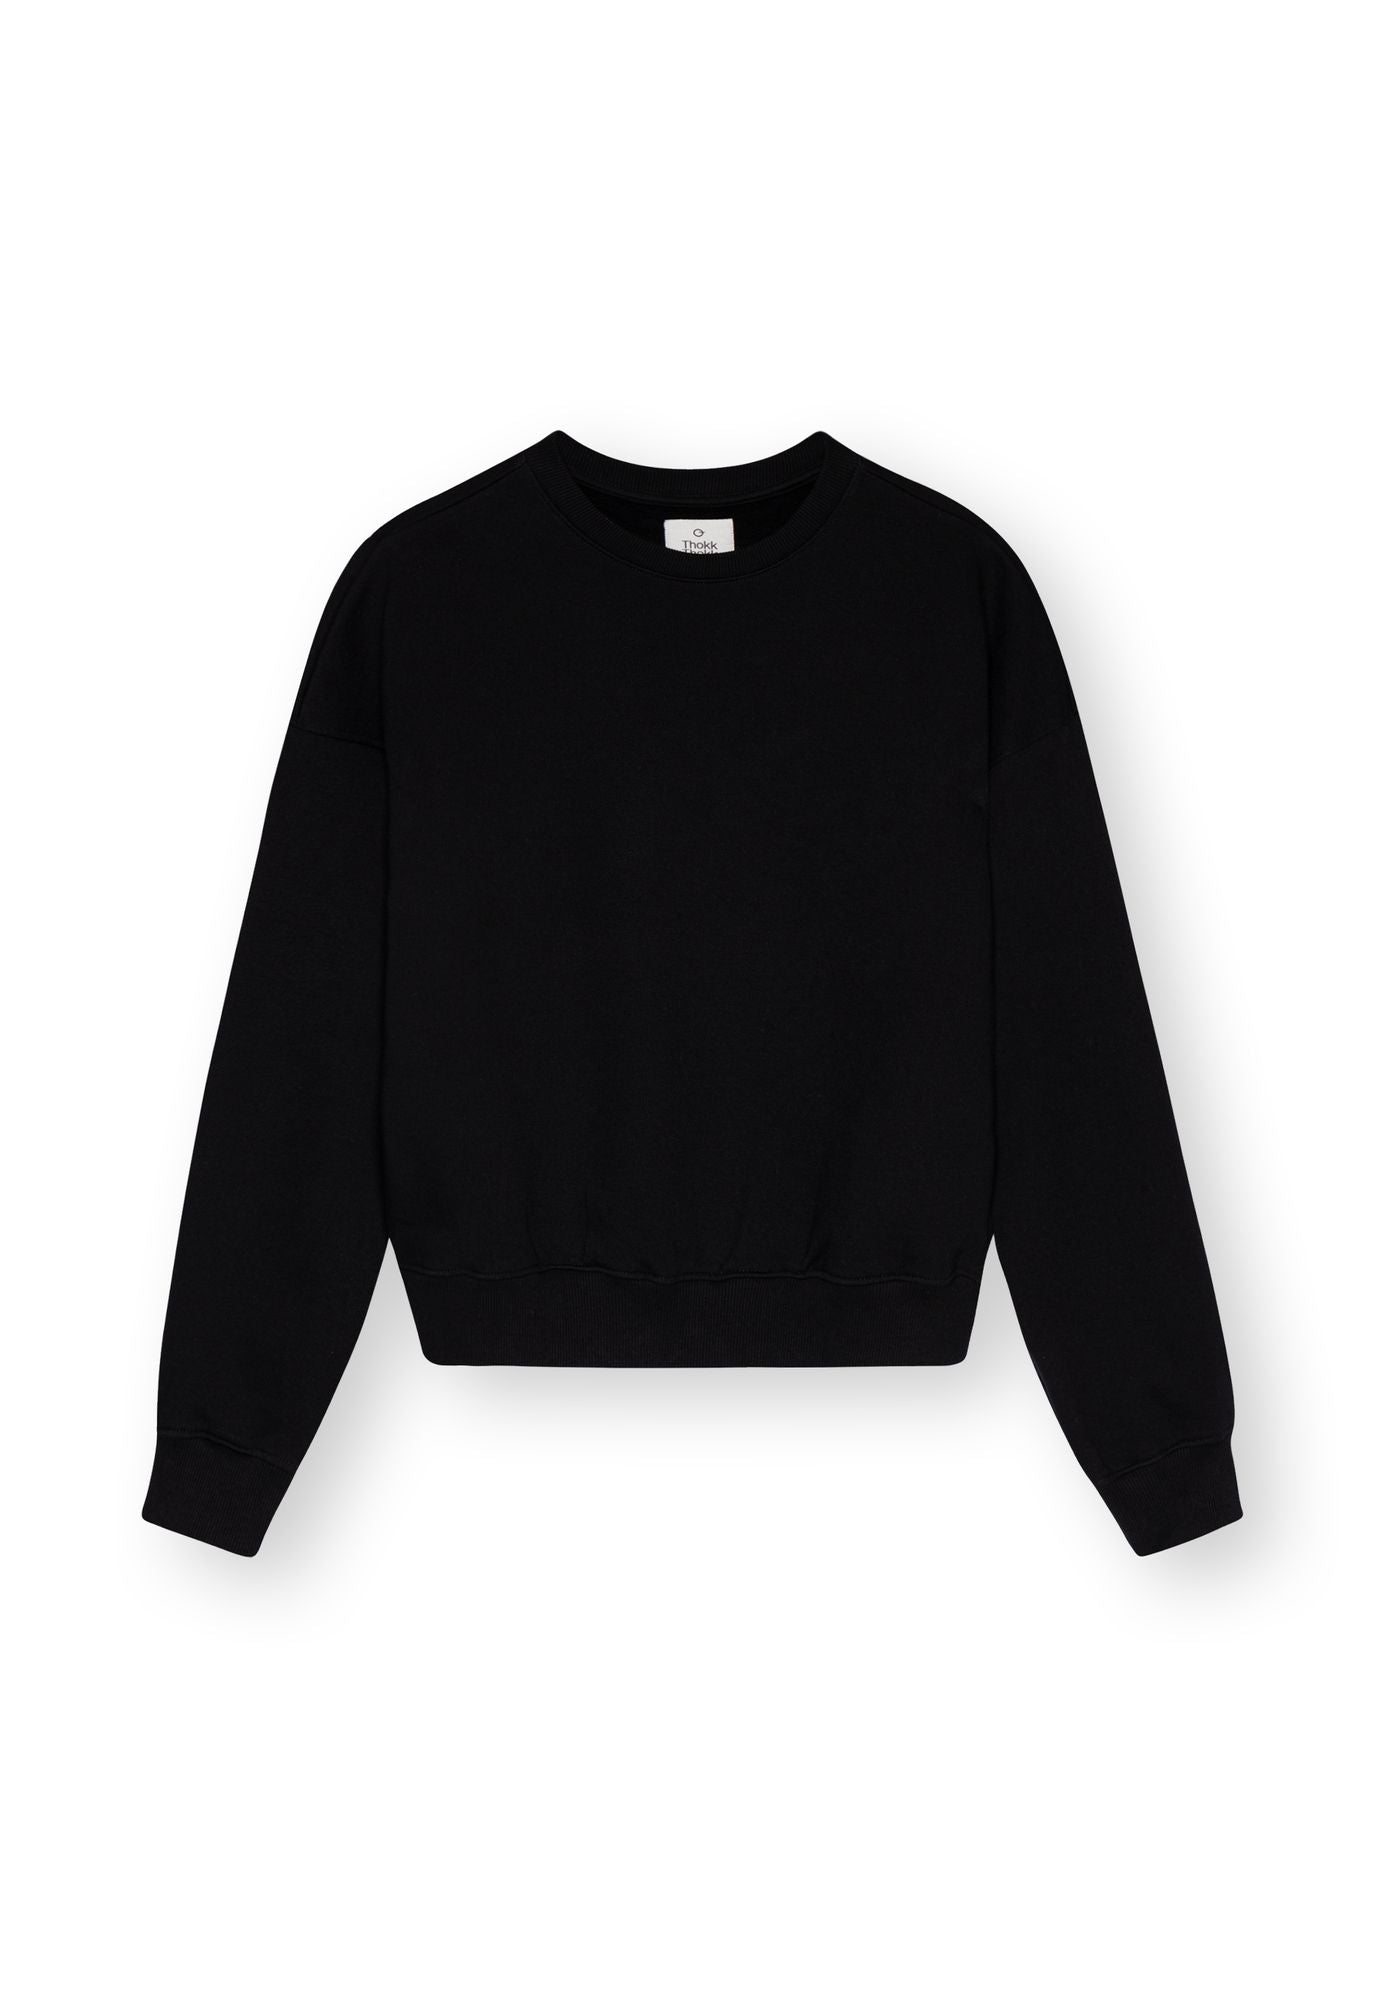 Schwarzer Sweater TT1022 aus Bio-Baumwolle von Thokkthokk